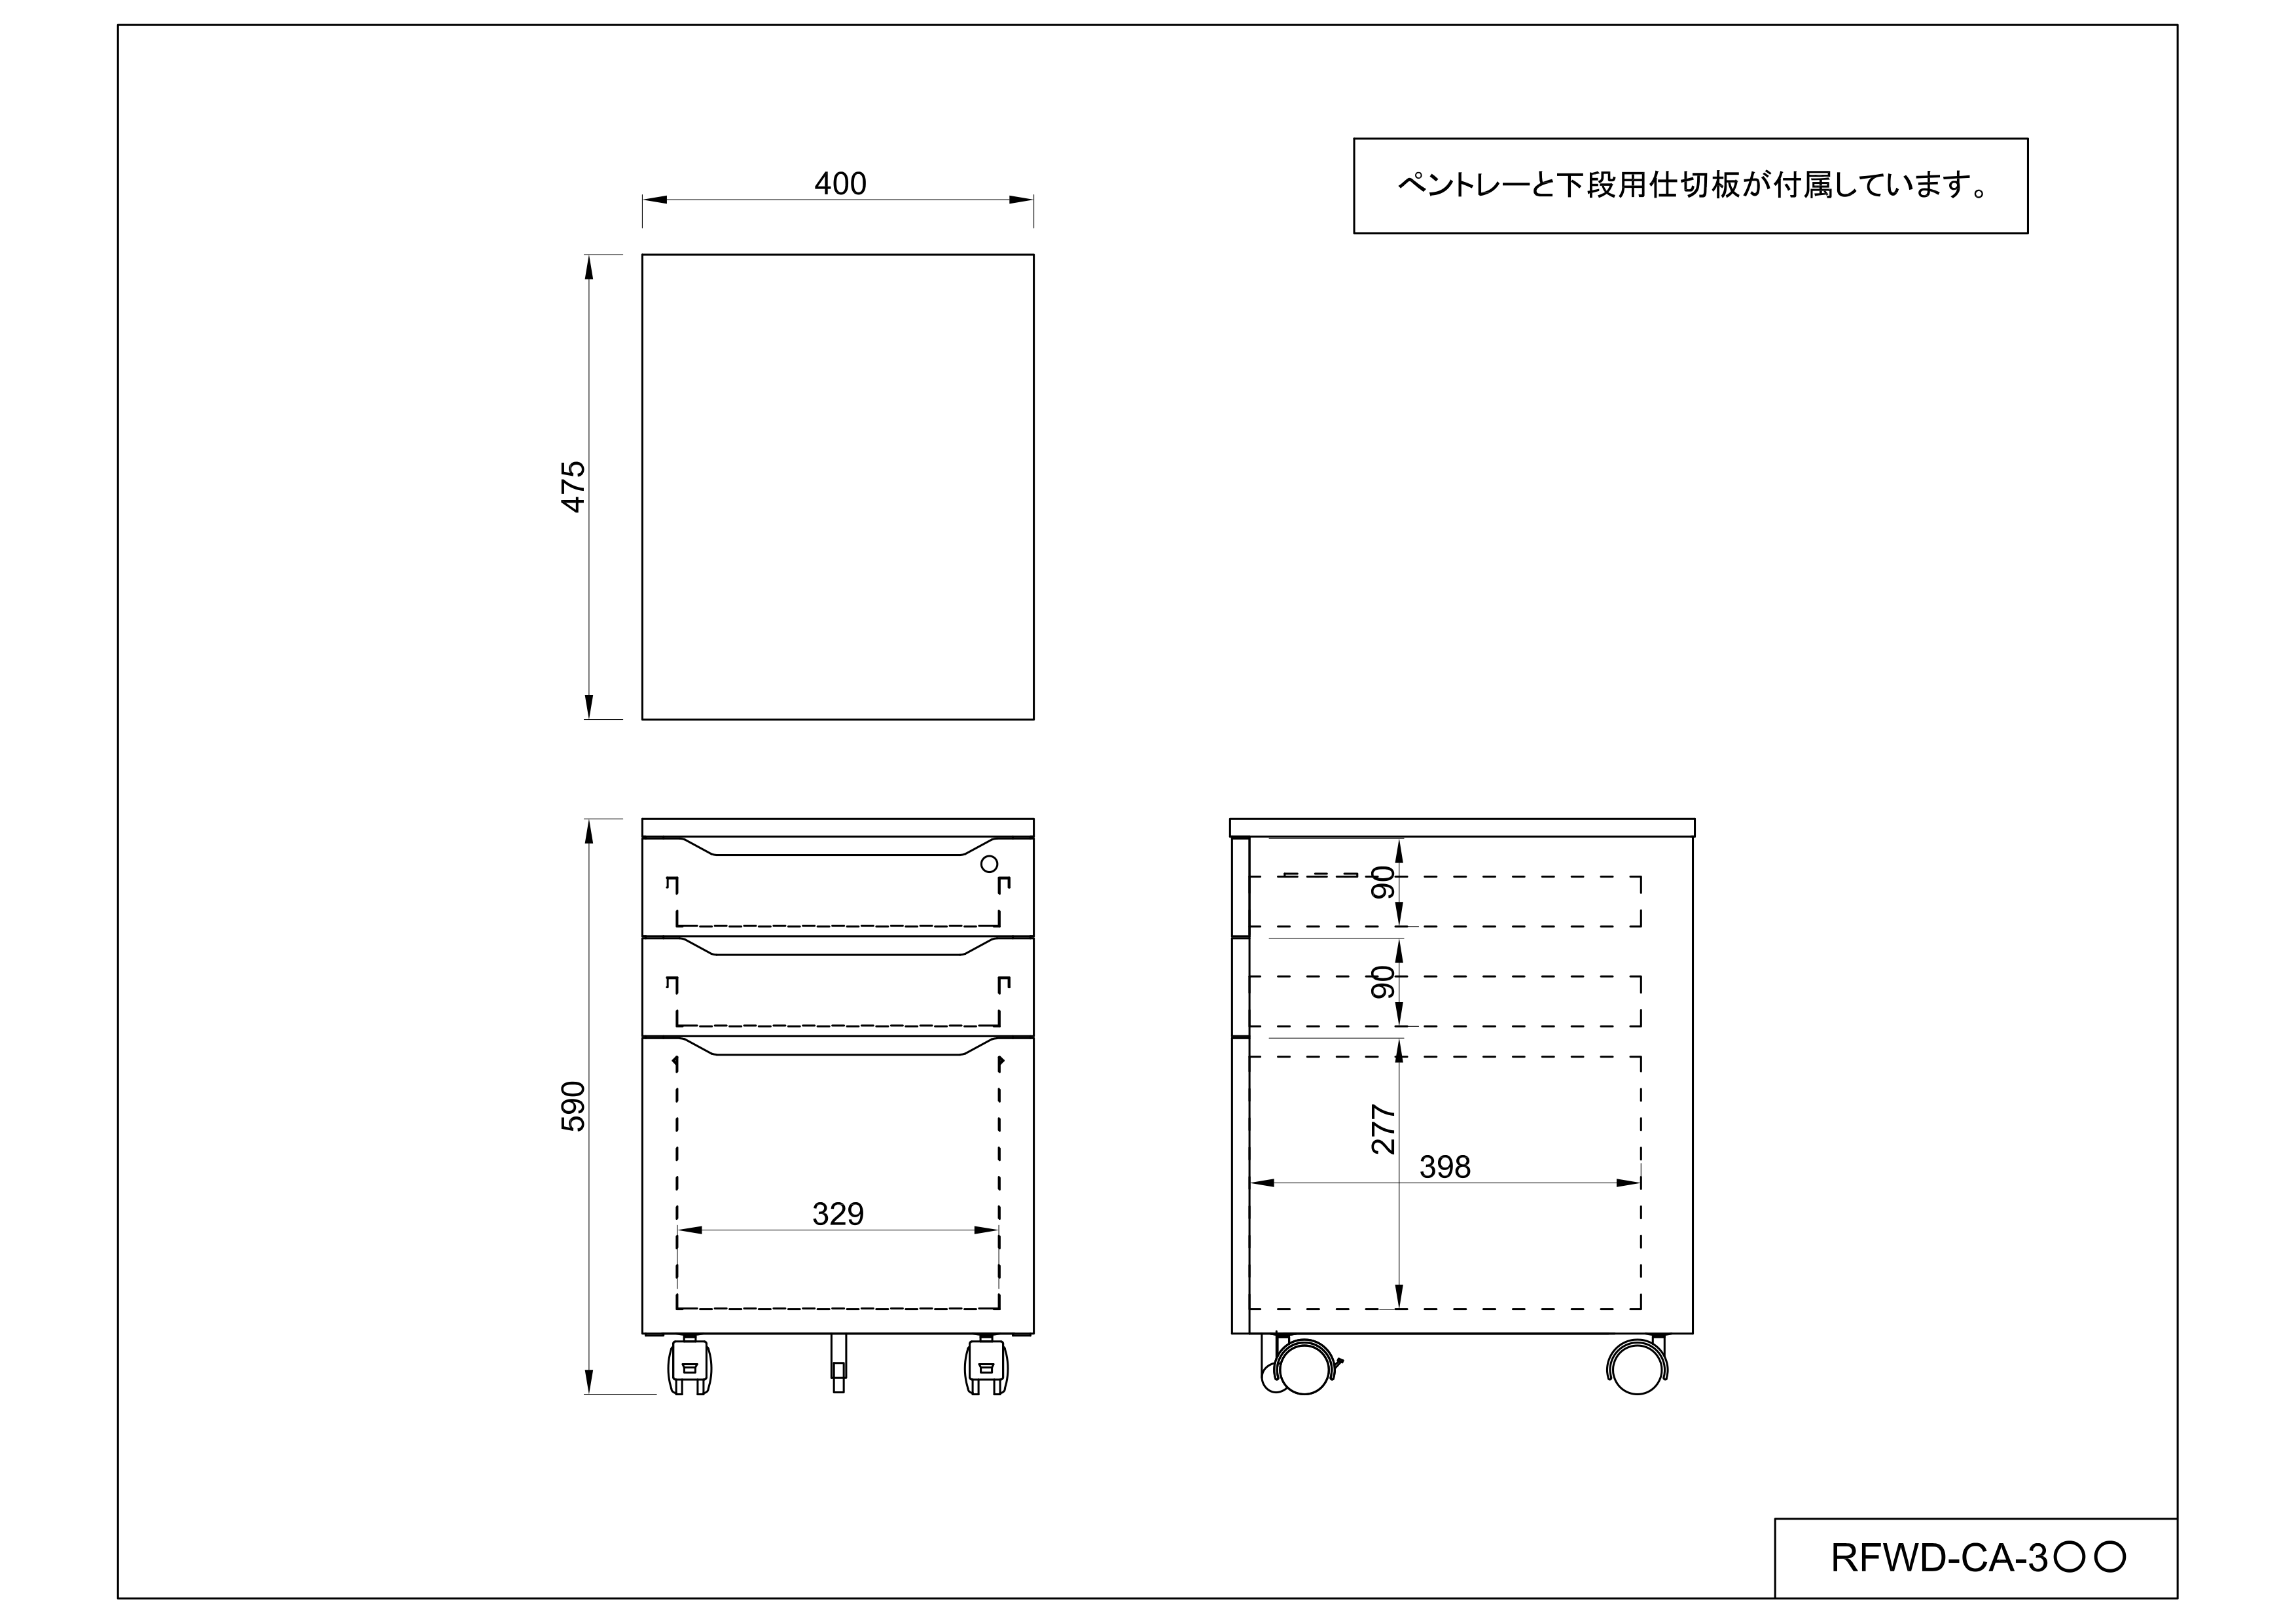 ユピタシリーズRF木製デスク3段キャビネットナチュラルRFWD-CA-3NA オフィス家具の通販ならアール・エフ・ヤマカワ